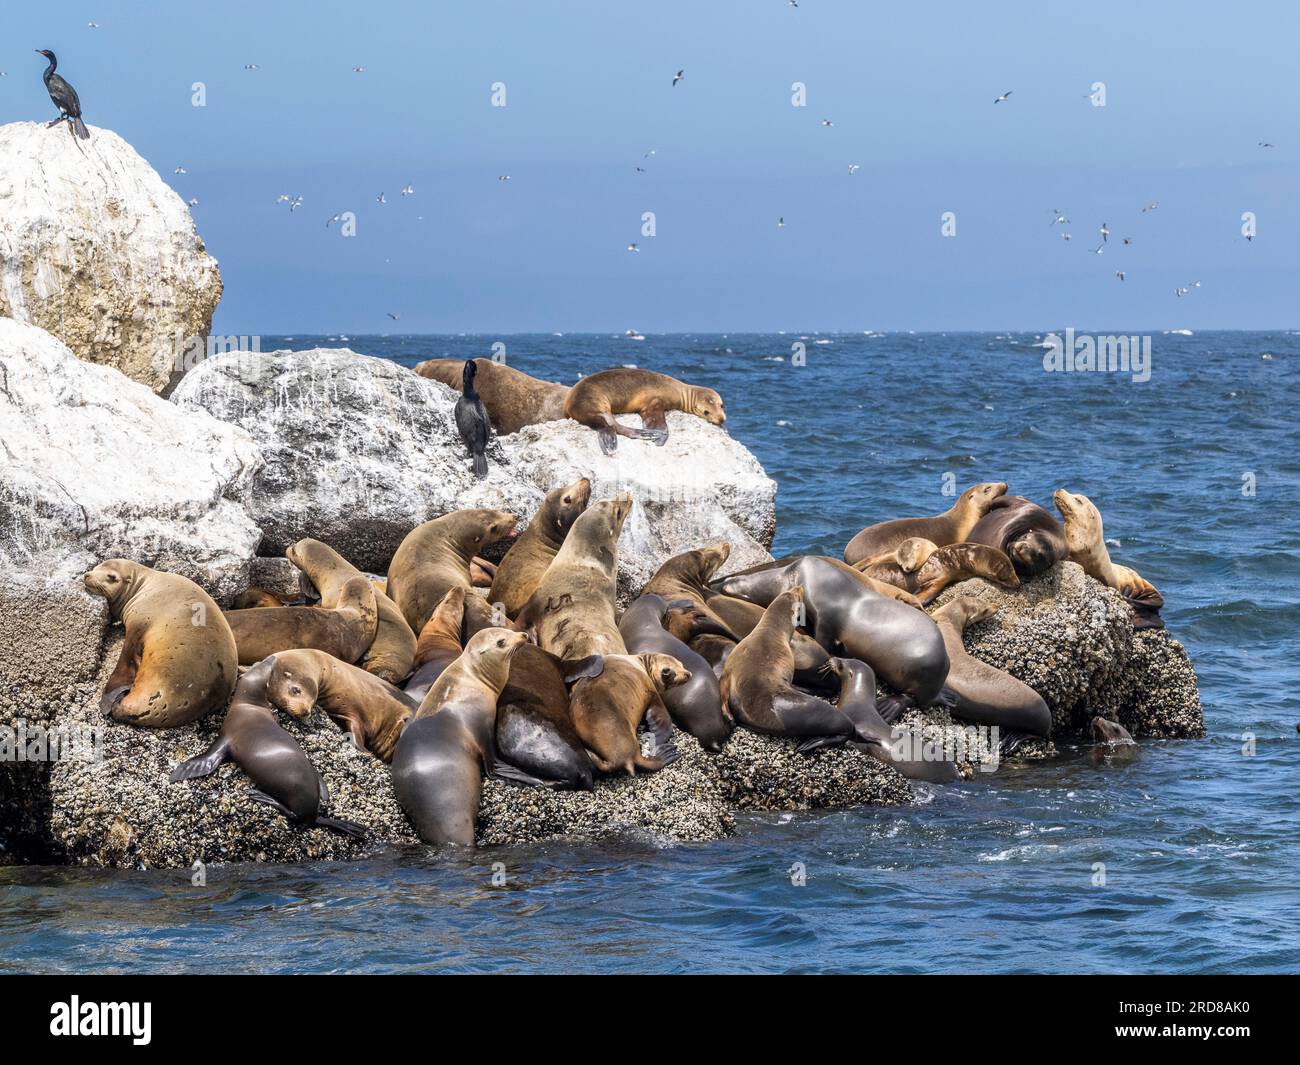 Lions de mer de Californie (Zalophus californianus), transportés dans le sanctuaire marin national de Monterey Bay, Californie, États-Unis Banque D'Images